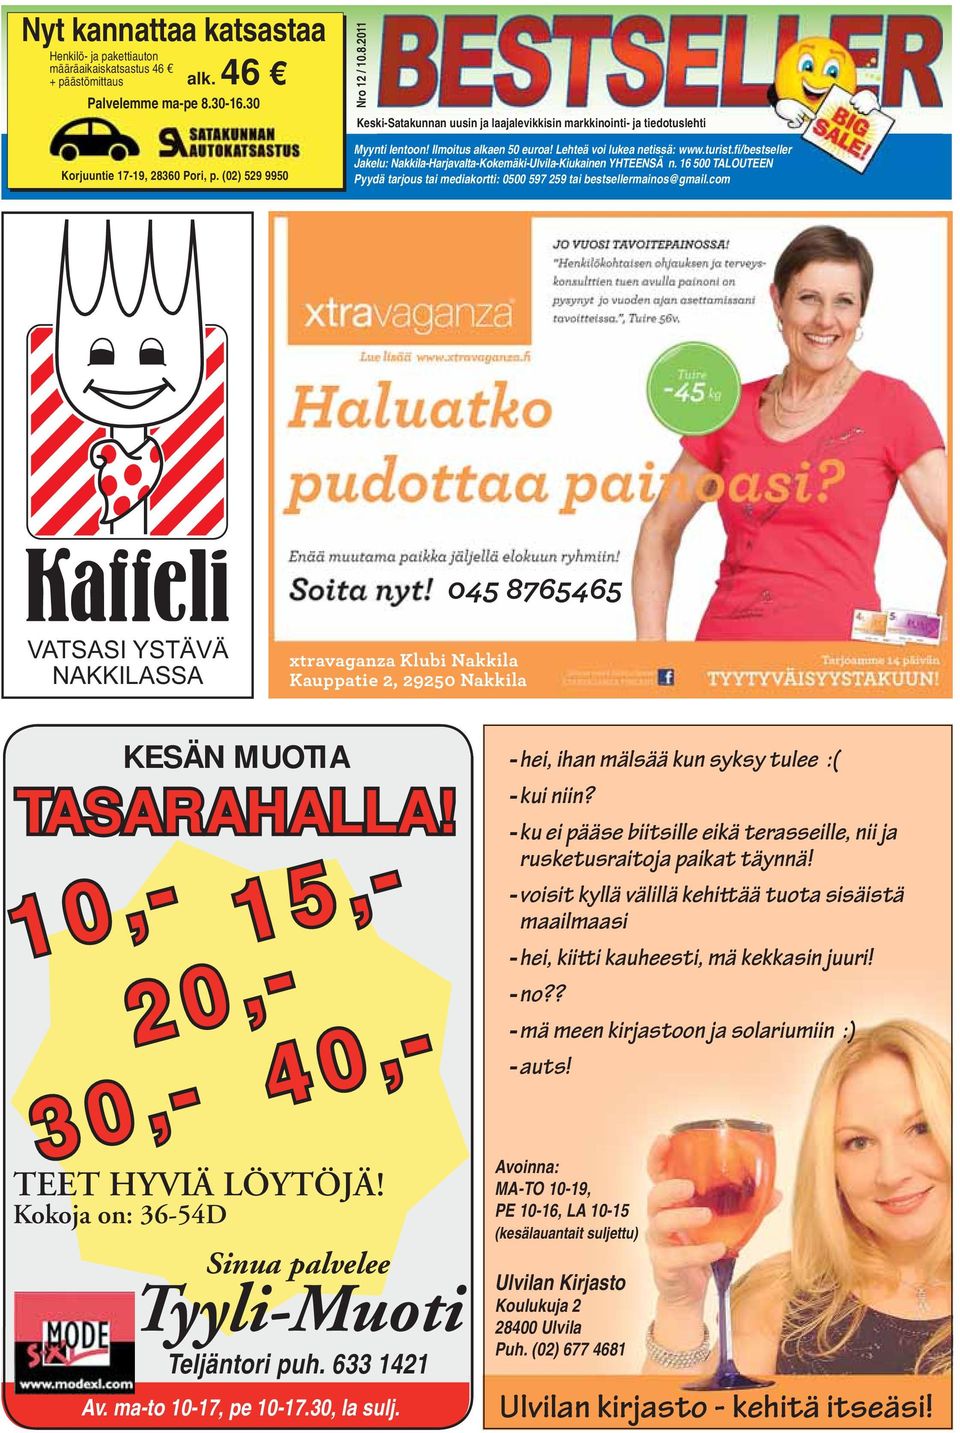 Lehteä voi lukea netissä: www.turist.fi/bestseller Jakelu: Nakkila-Harjavalta-Kokemäki-Ulvila-Kiukainen YHTEENSÄ n.